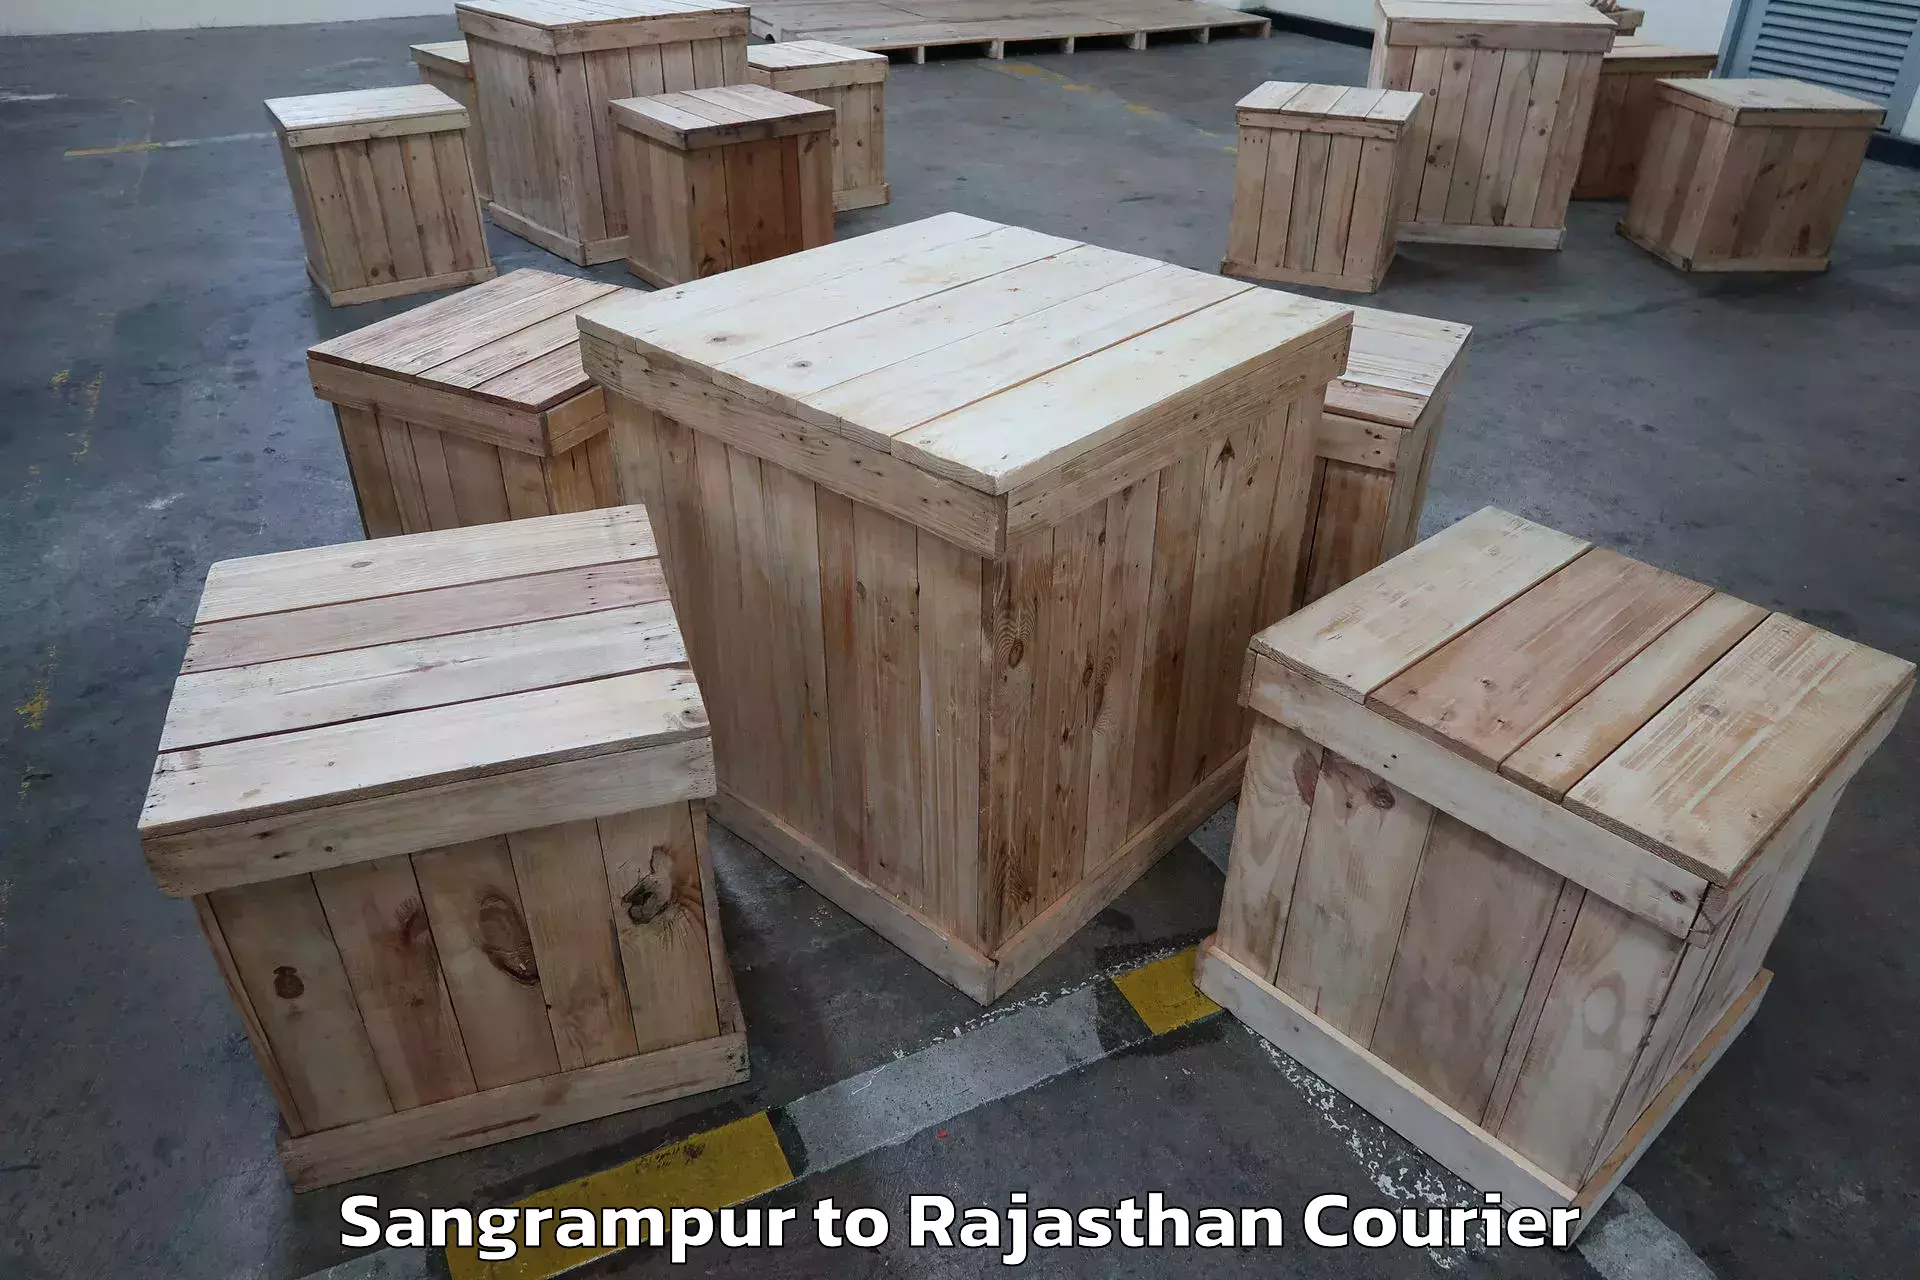 Residential moving experts Sangrampur to IIT Jodhpur